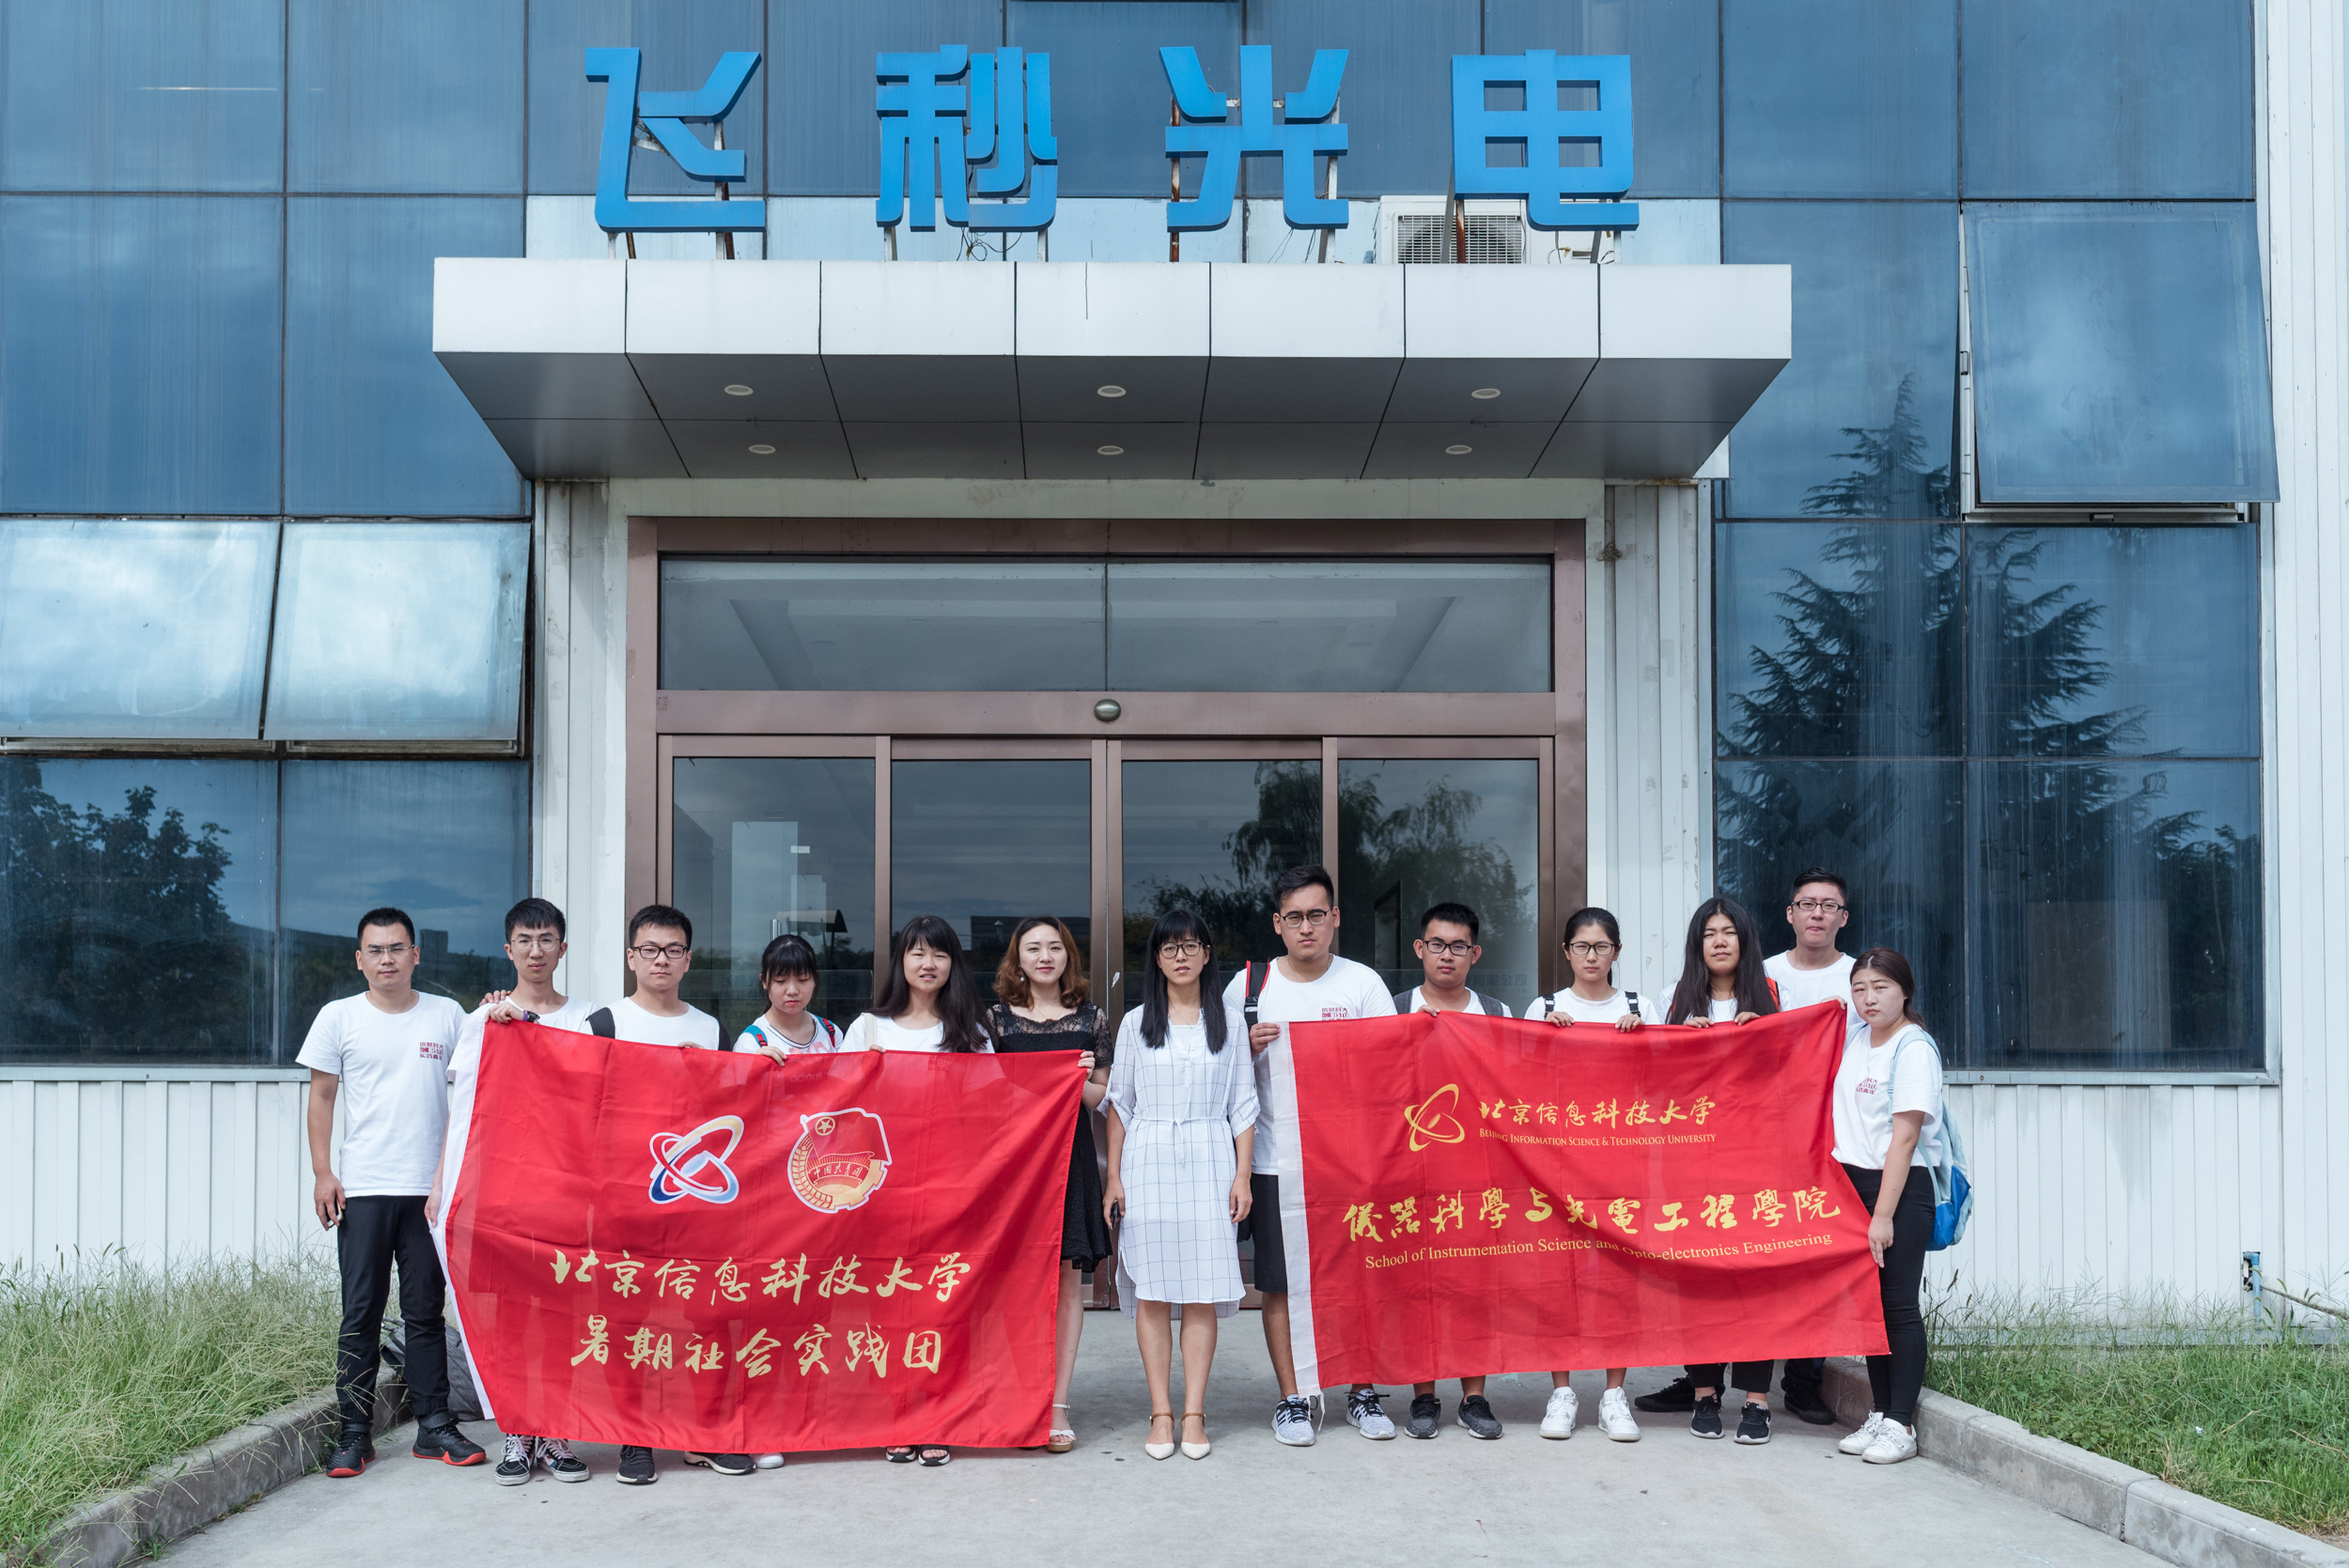 我司迎来由北京信息科技大学仪器科学与光电工程学院大学生暑期社会实践团